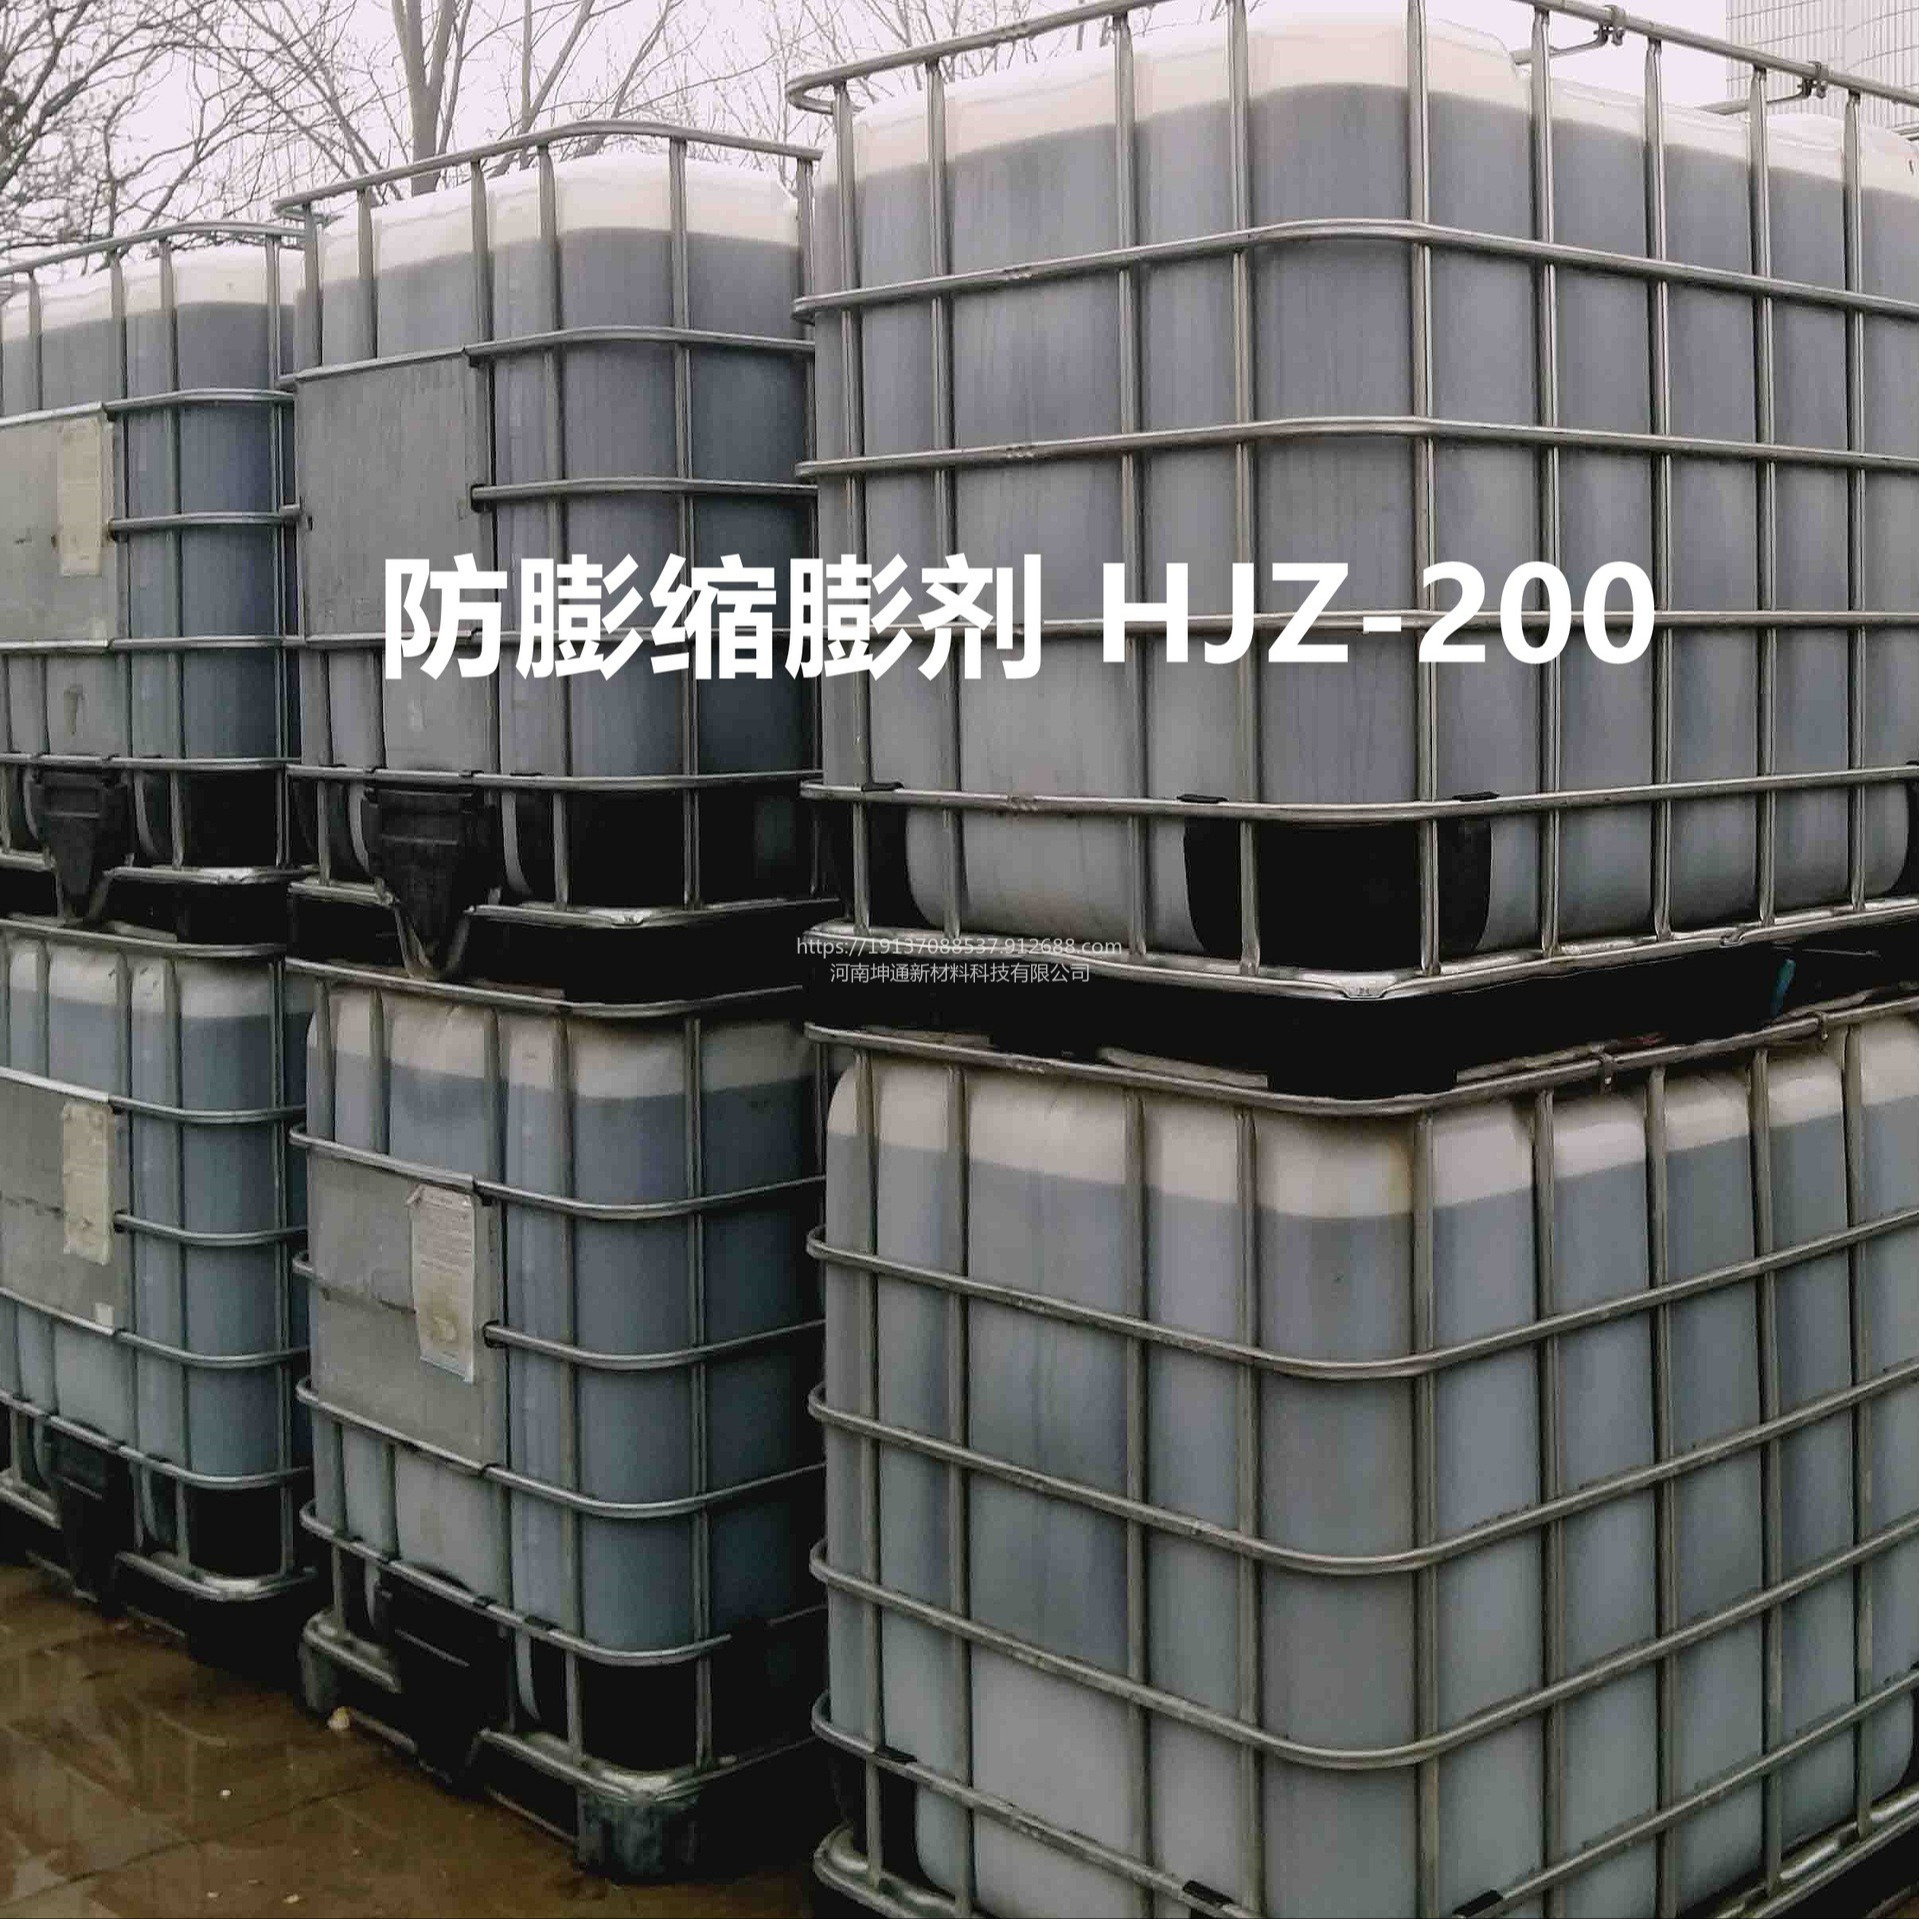 防膨缩膨剂HJZ-200   粘土稳定剂  低渗油藏粘土防膨缩膨剂